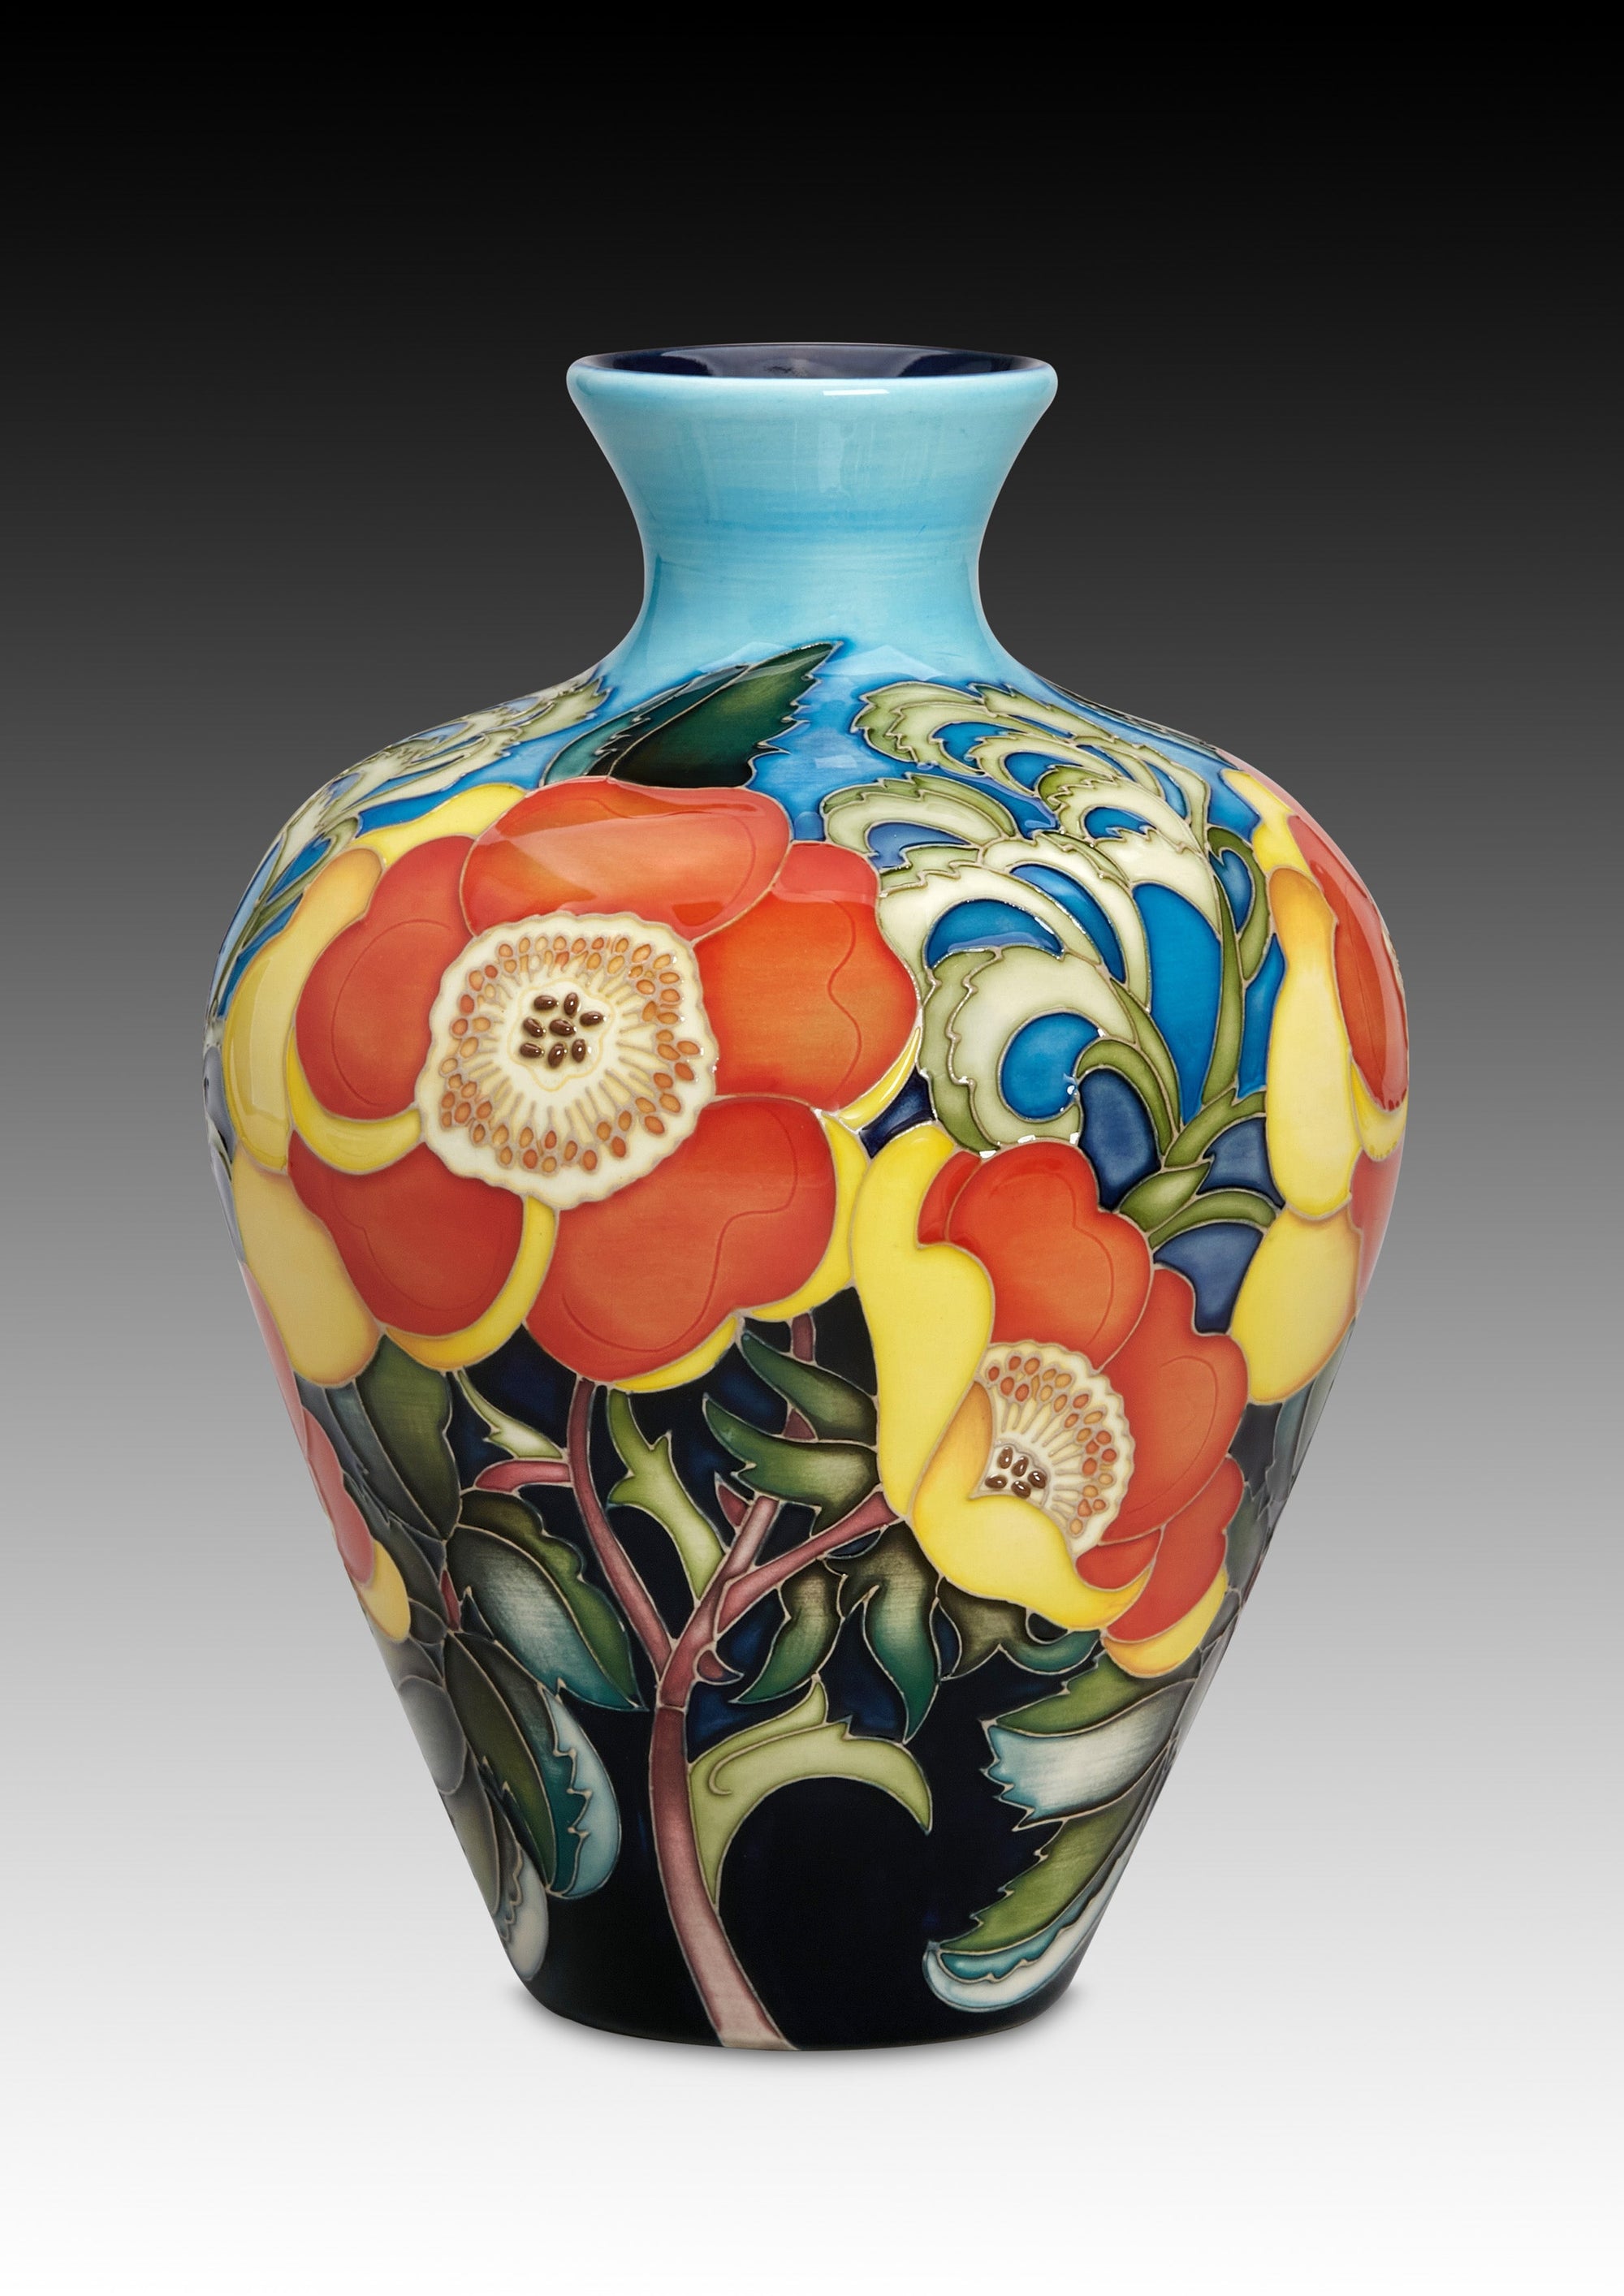 Moorcroft Rosa Eglanteria 'Lutea' Vase-Goviers